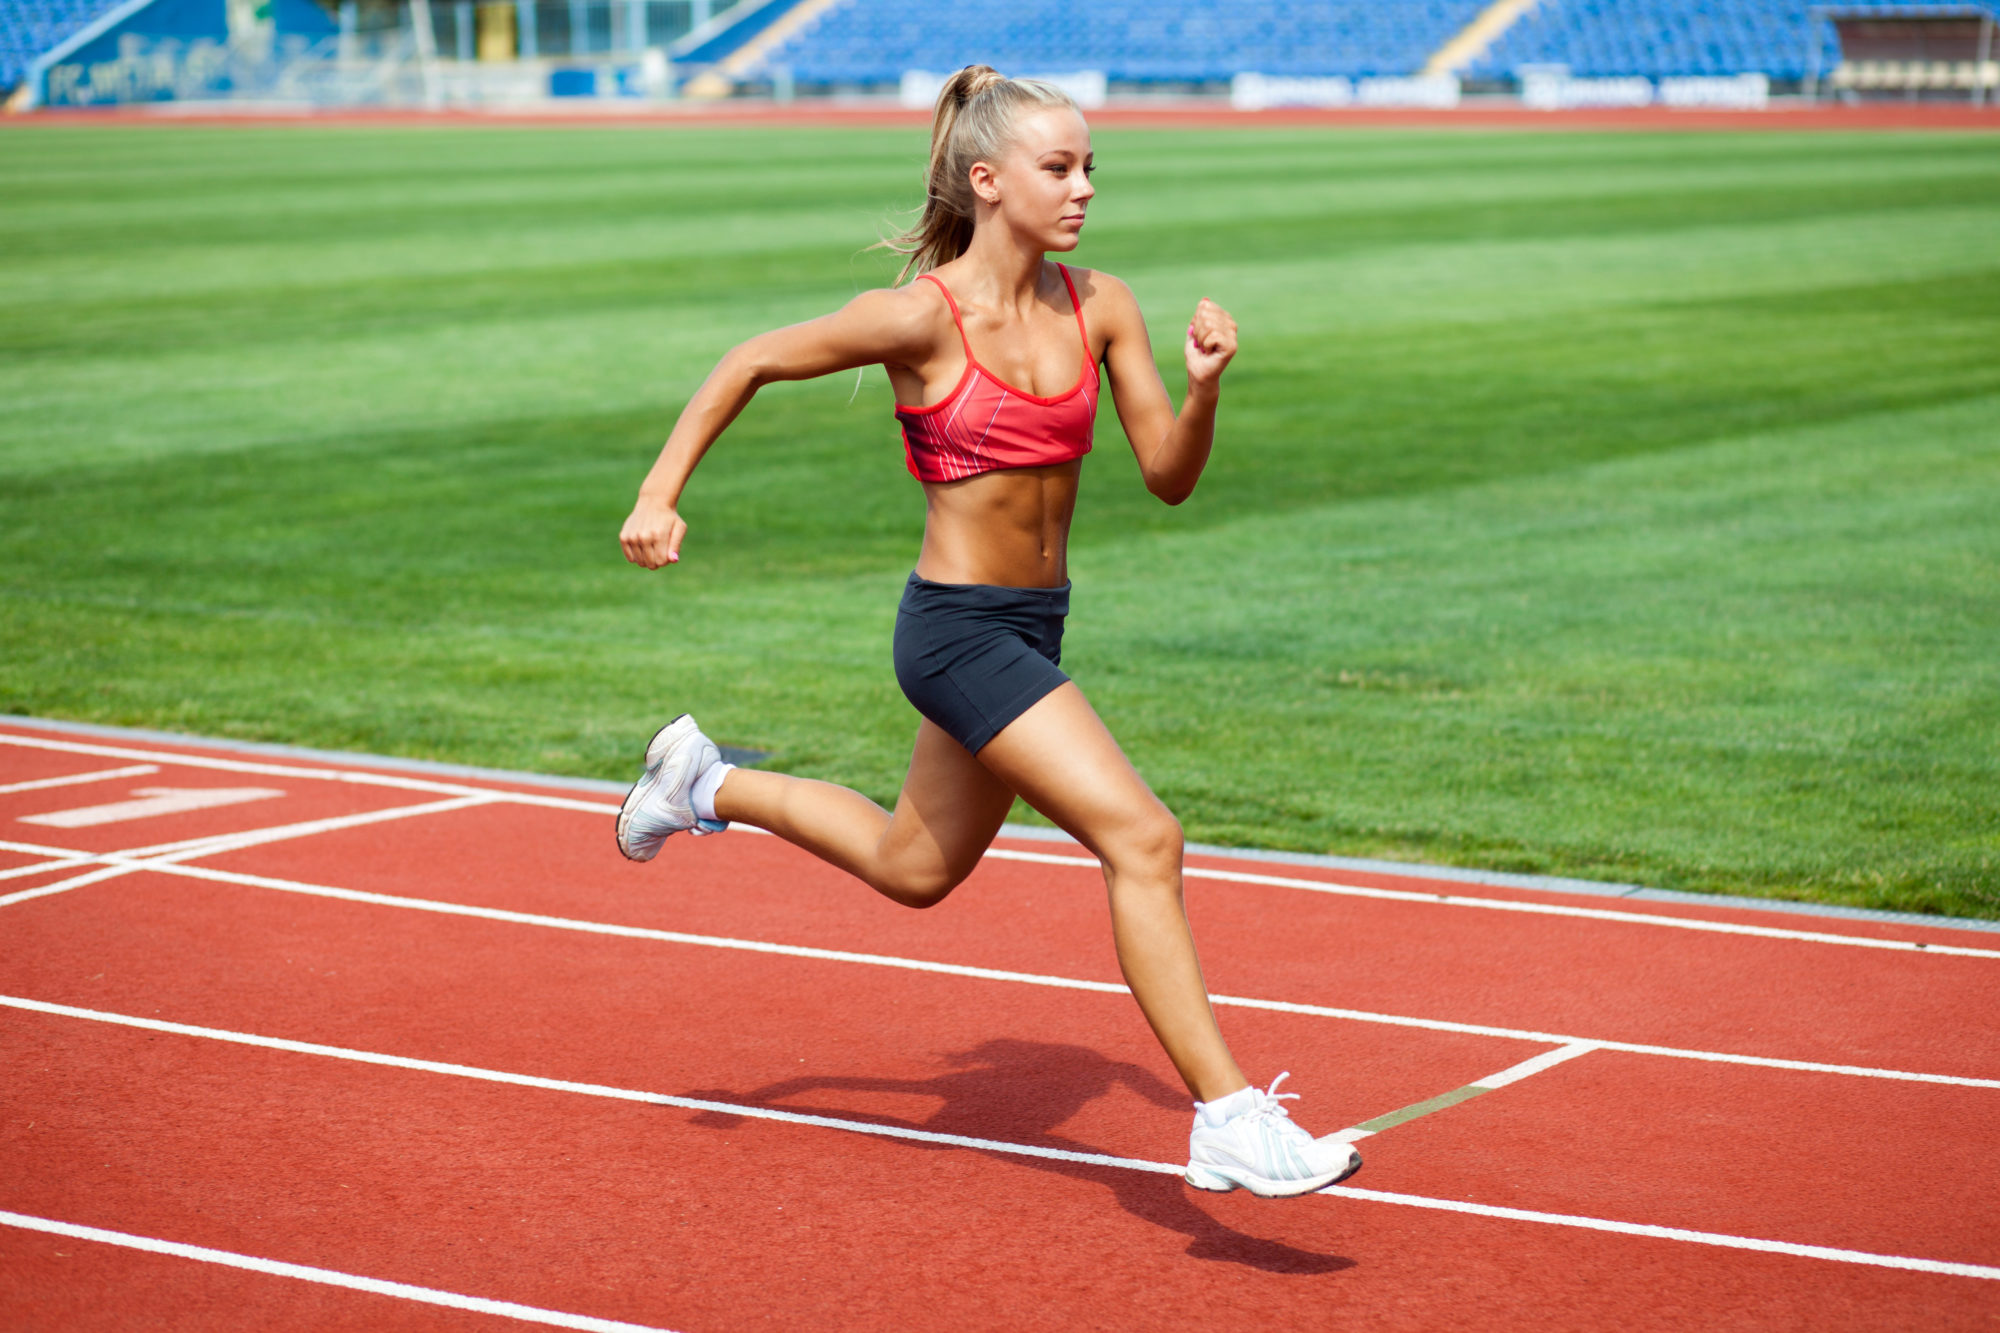 Po intenzívnych tréningoch sa telo potrebuje regenerovať, a to nemusí fungovať dobre, ak máte vyčerpávajúce obdobie. Foto: Shutterstock